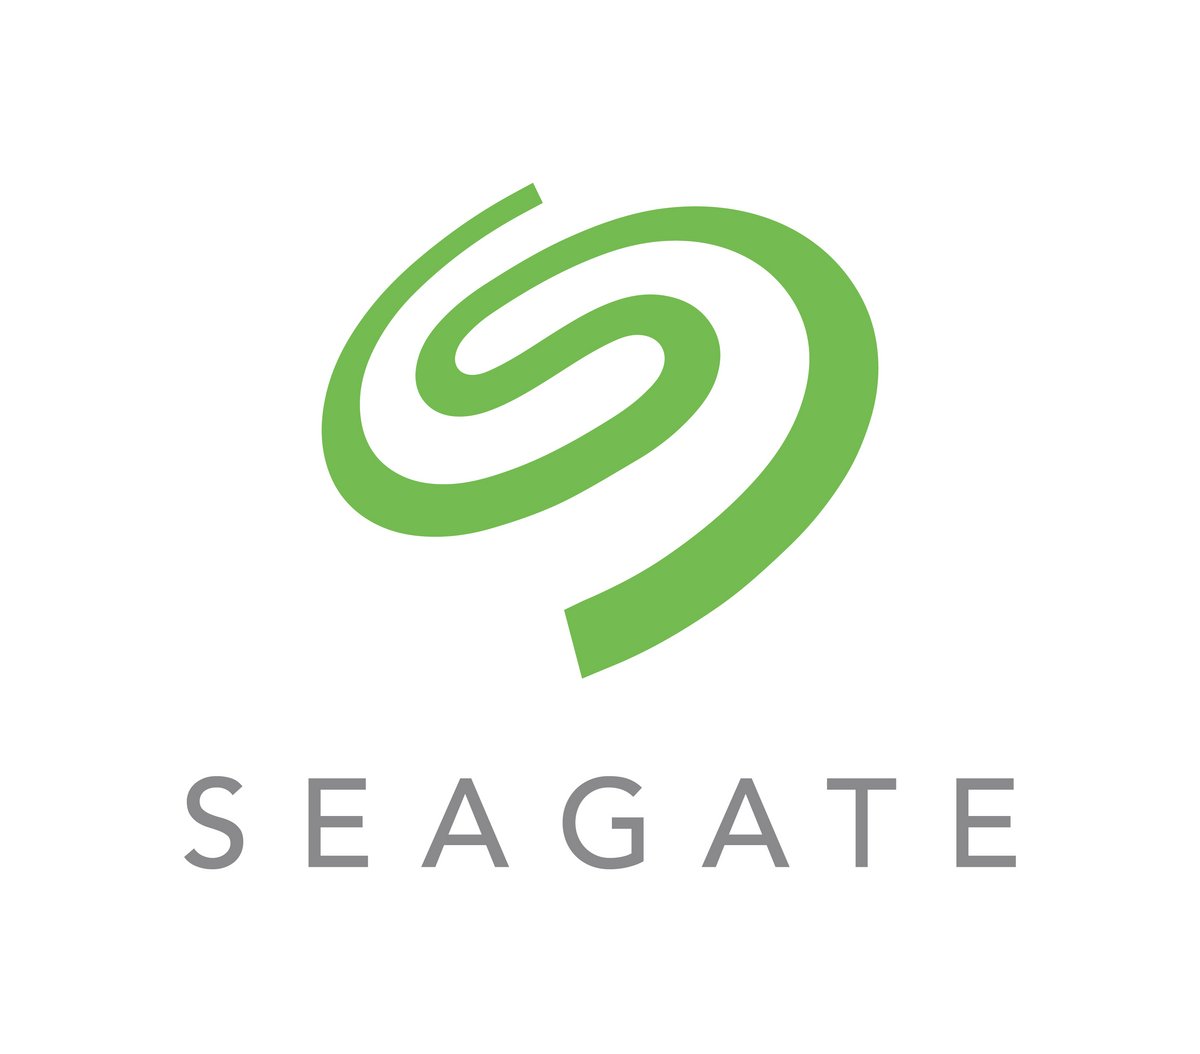 Saegate logo © Seagate